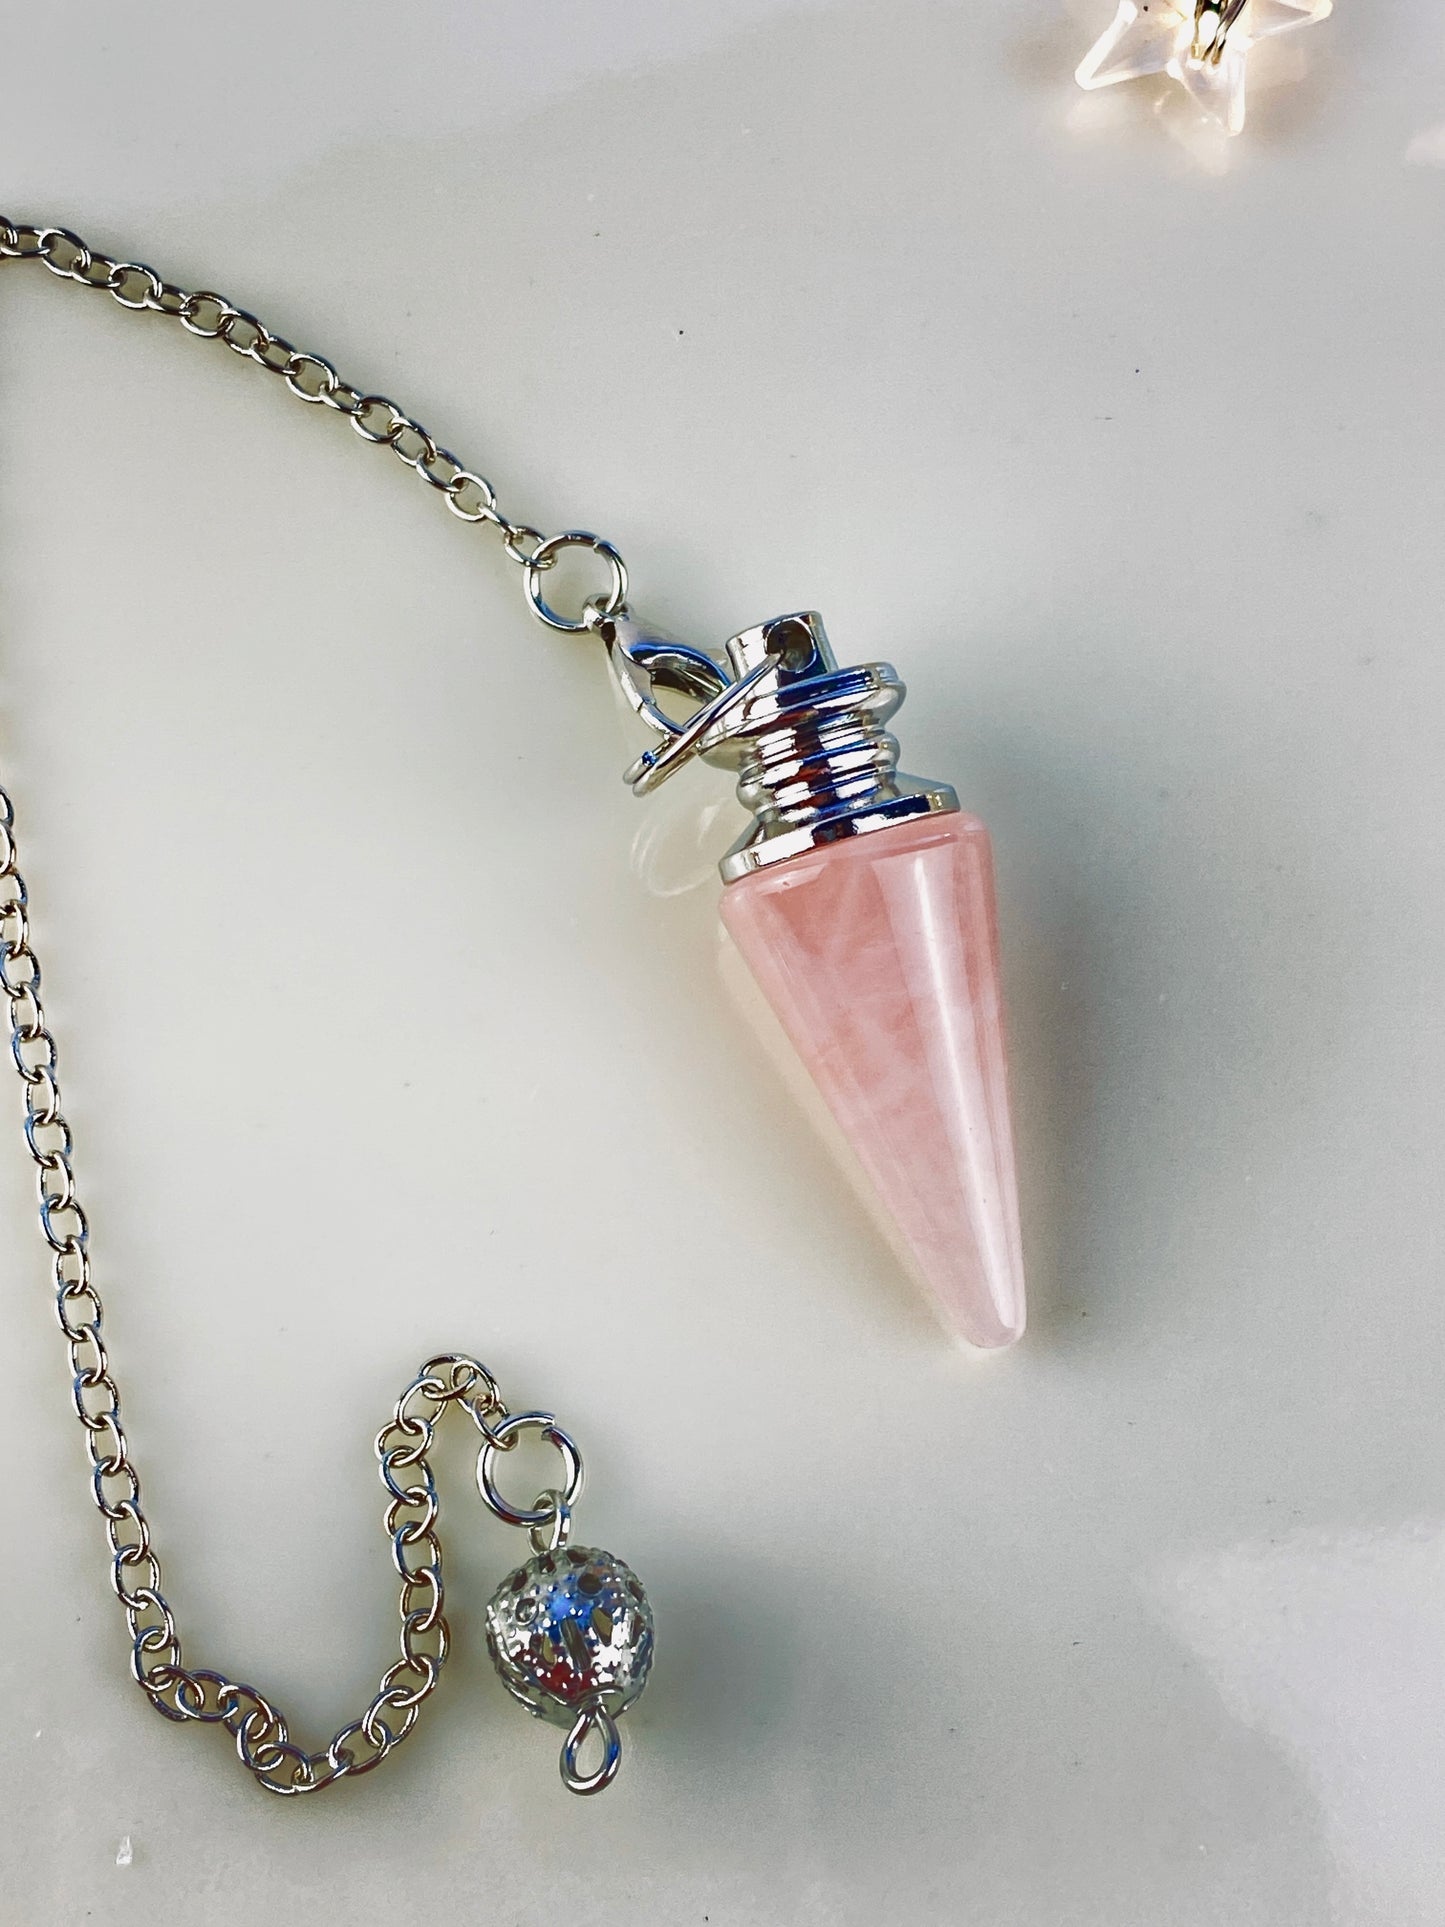 Rose Quartz Crystal Pendulum